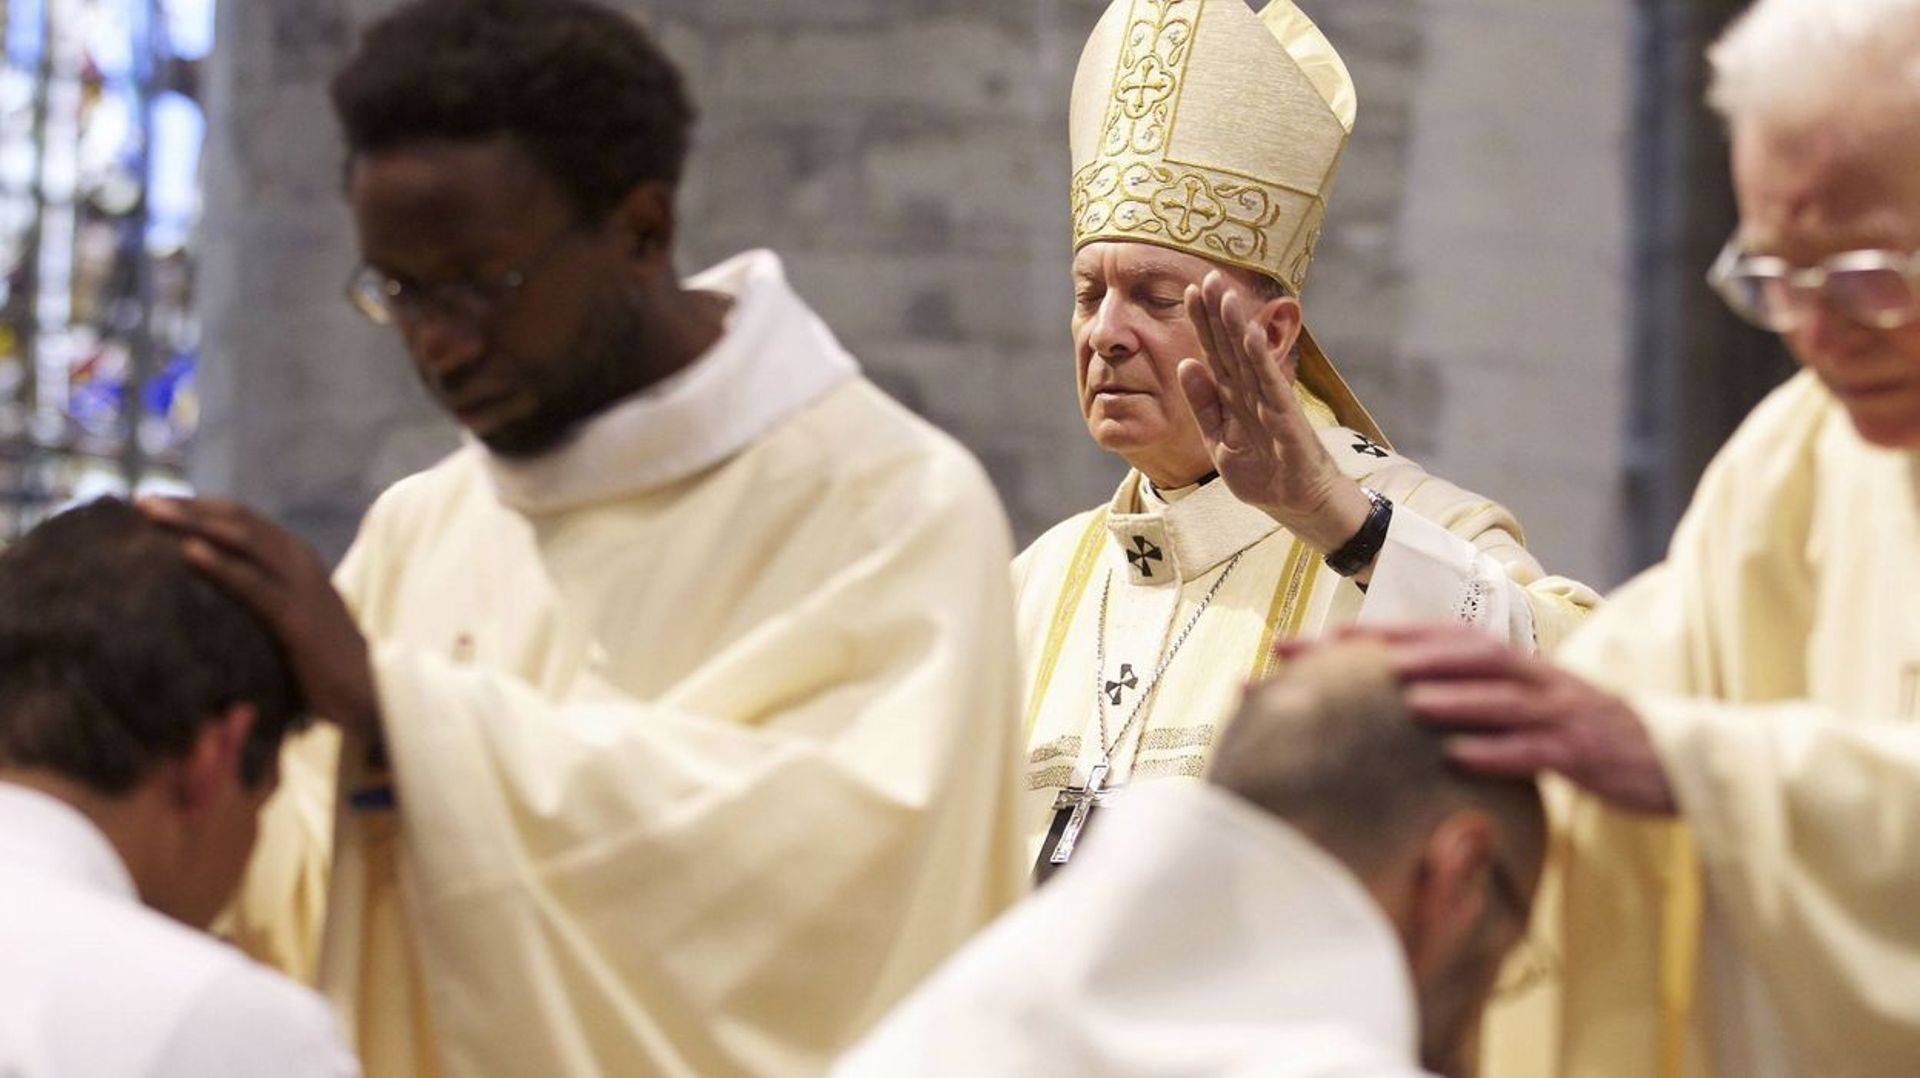 Face à la pénurie de prêtres, l'Eglise se réorganise: comment expliquer cette baisse des vocations?